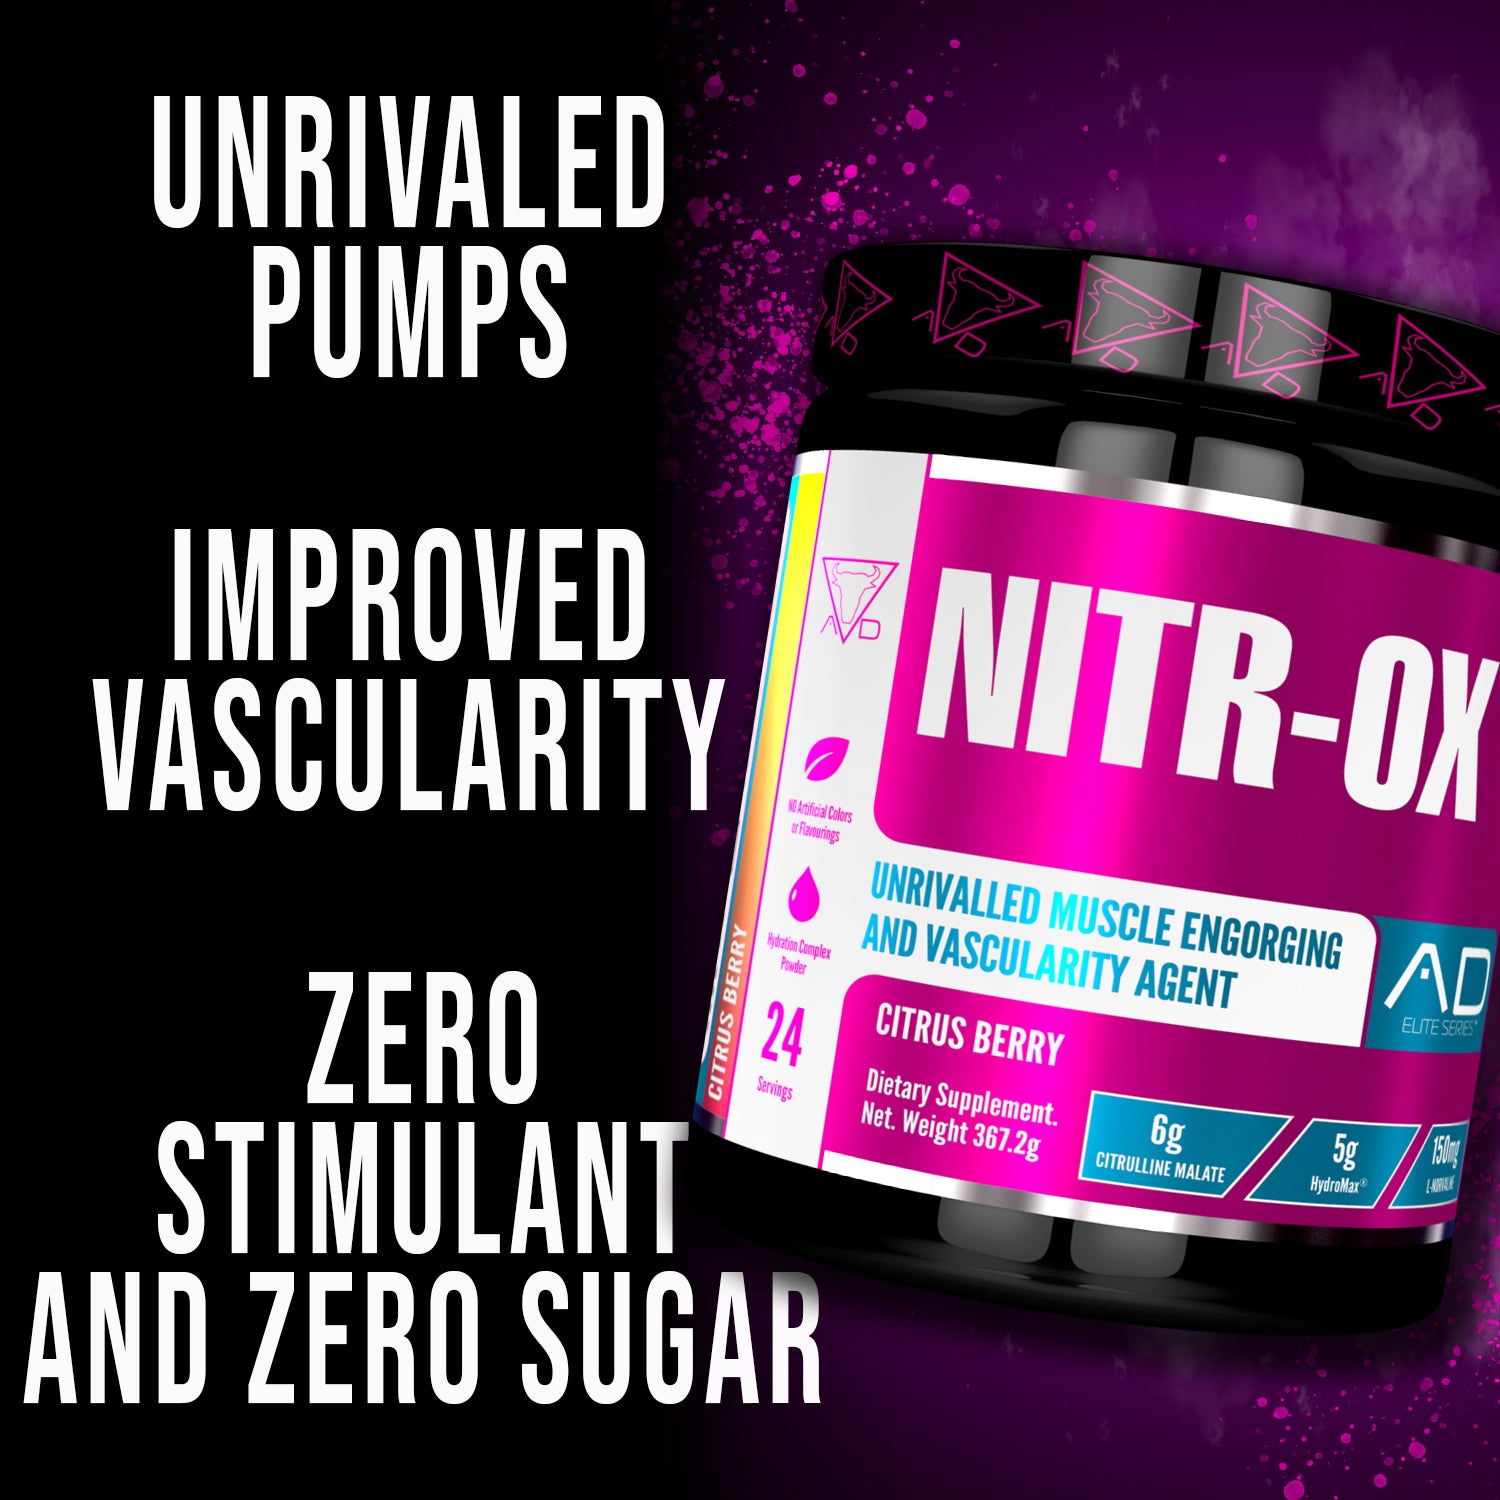 NITR-OX – Pump Formula